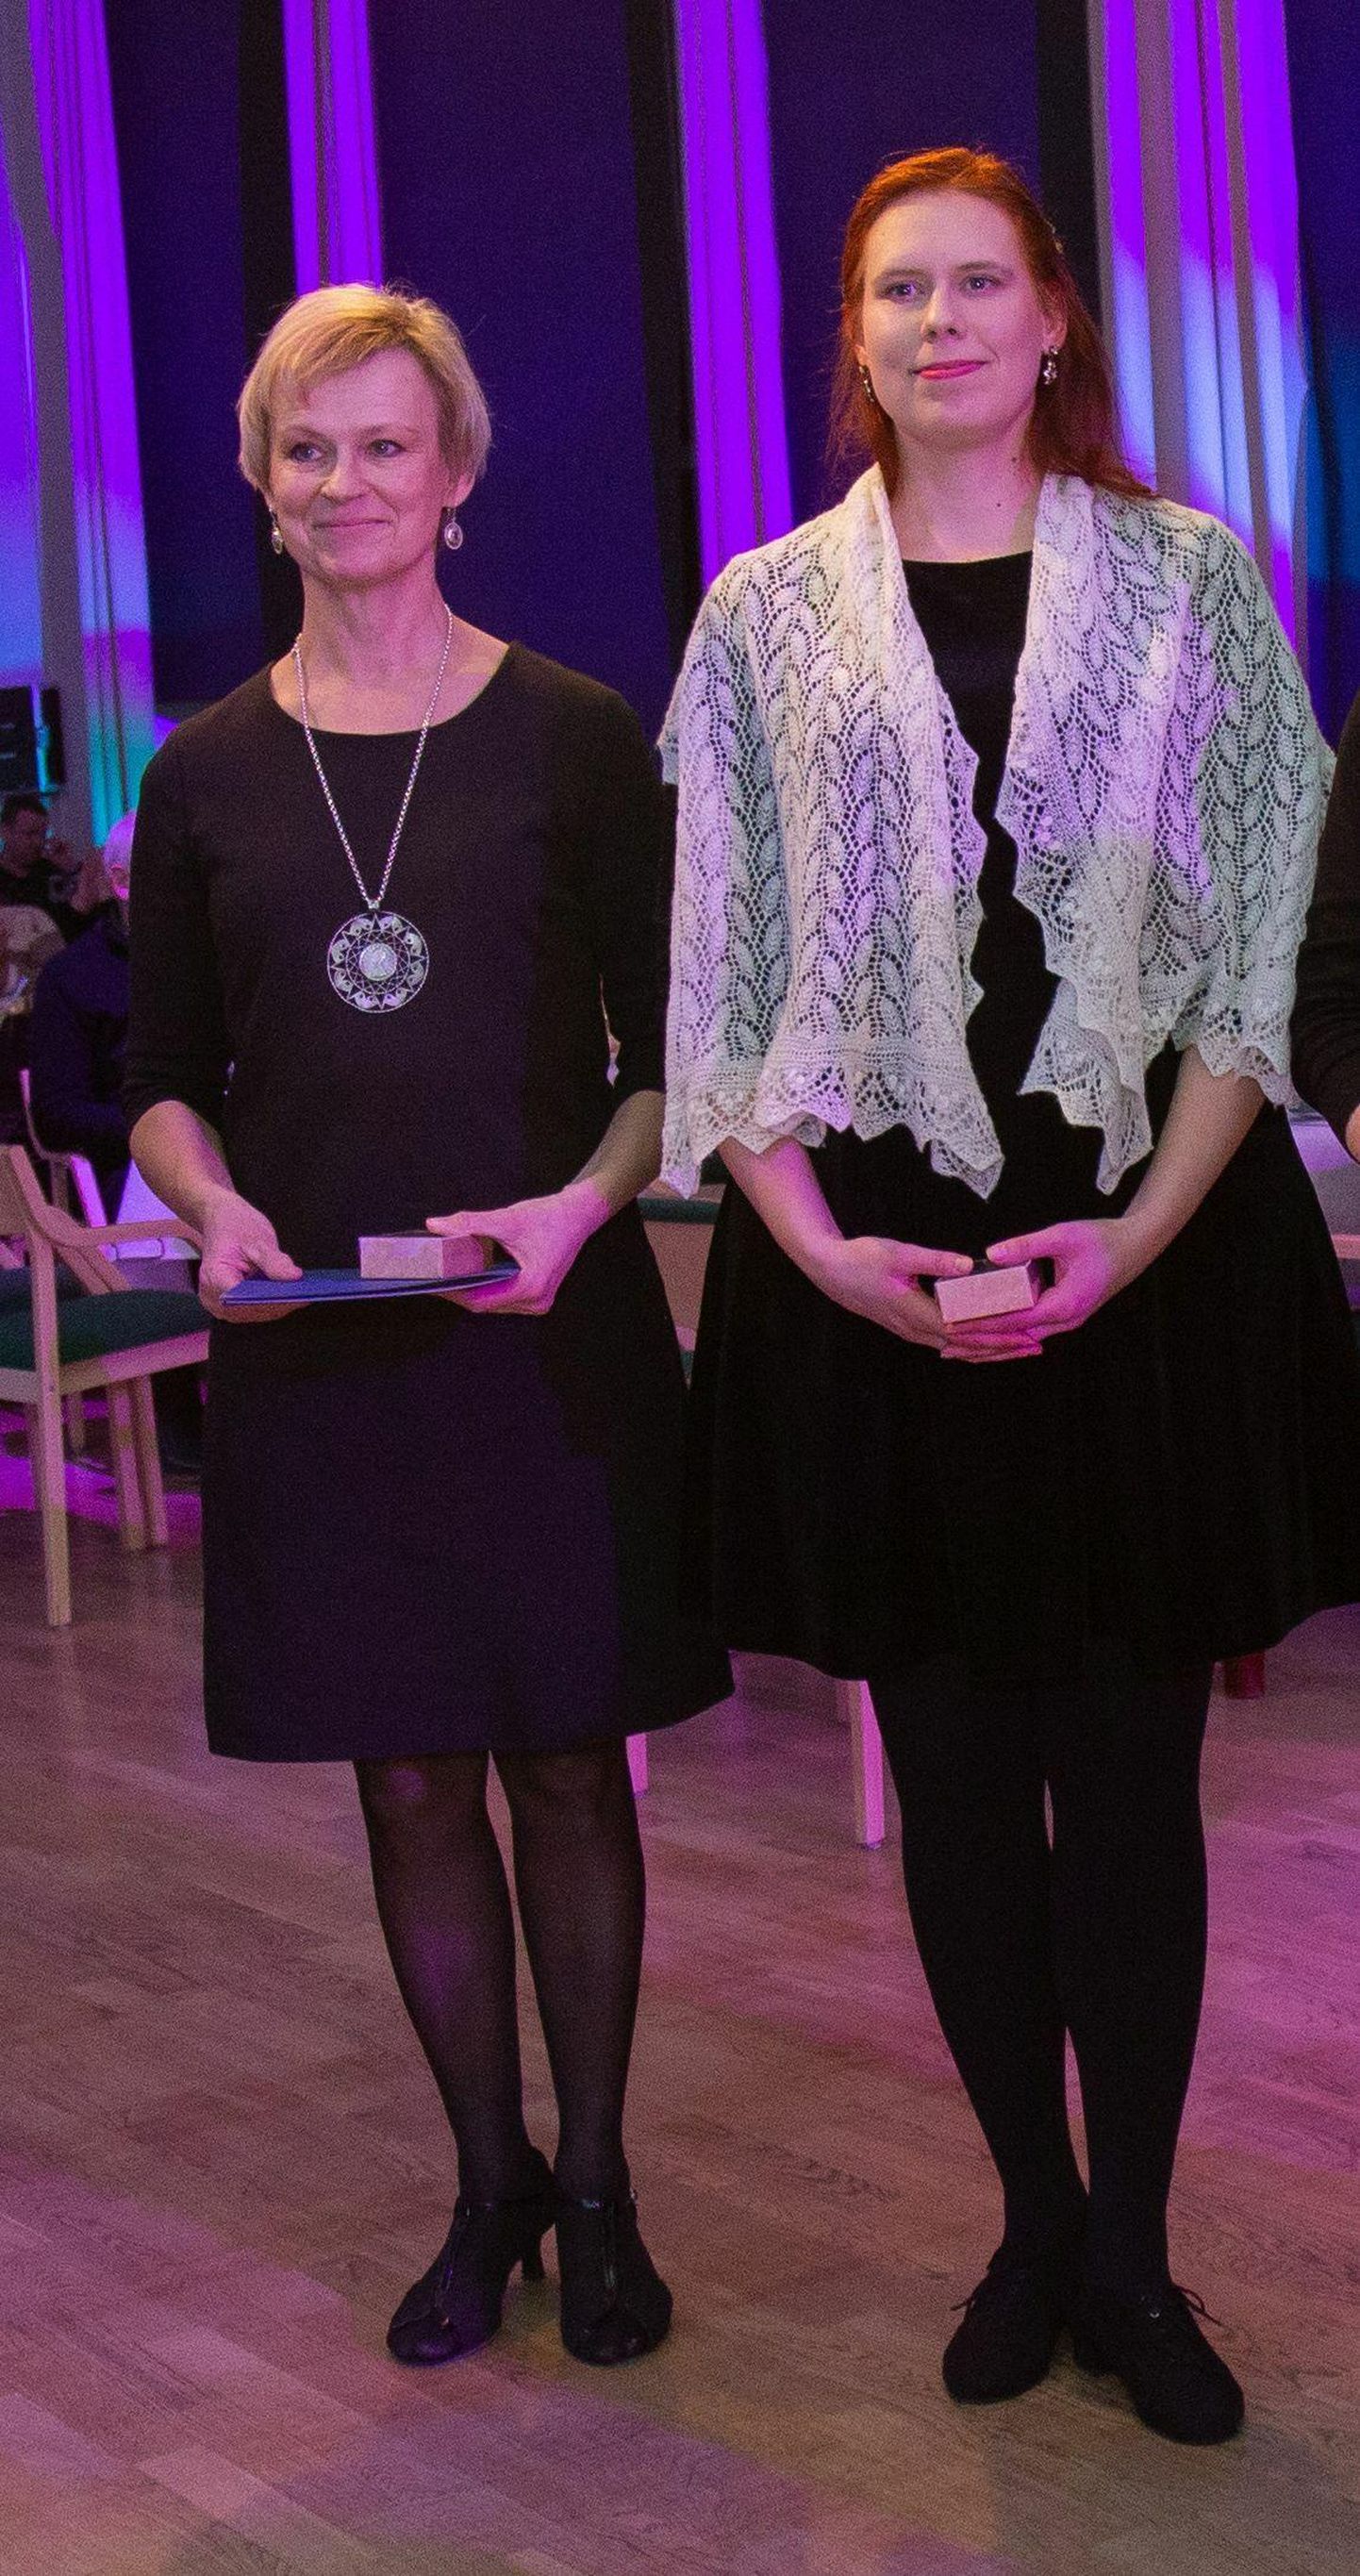 Viljandi gümnaasiumi õpetajad Ave (vasakul) ja Kertu Alvre kandideerivad tandemina Eesti parima huvialaõpetaja tiitlile.